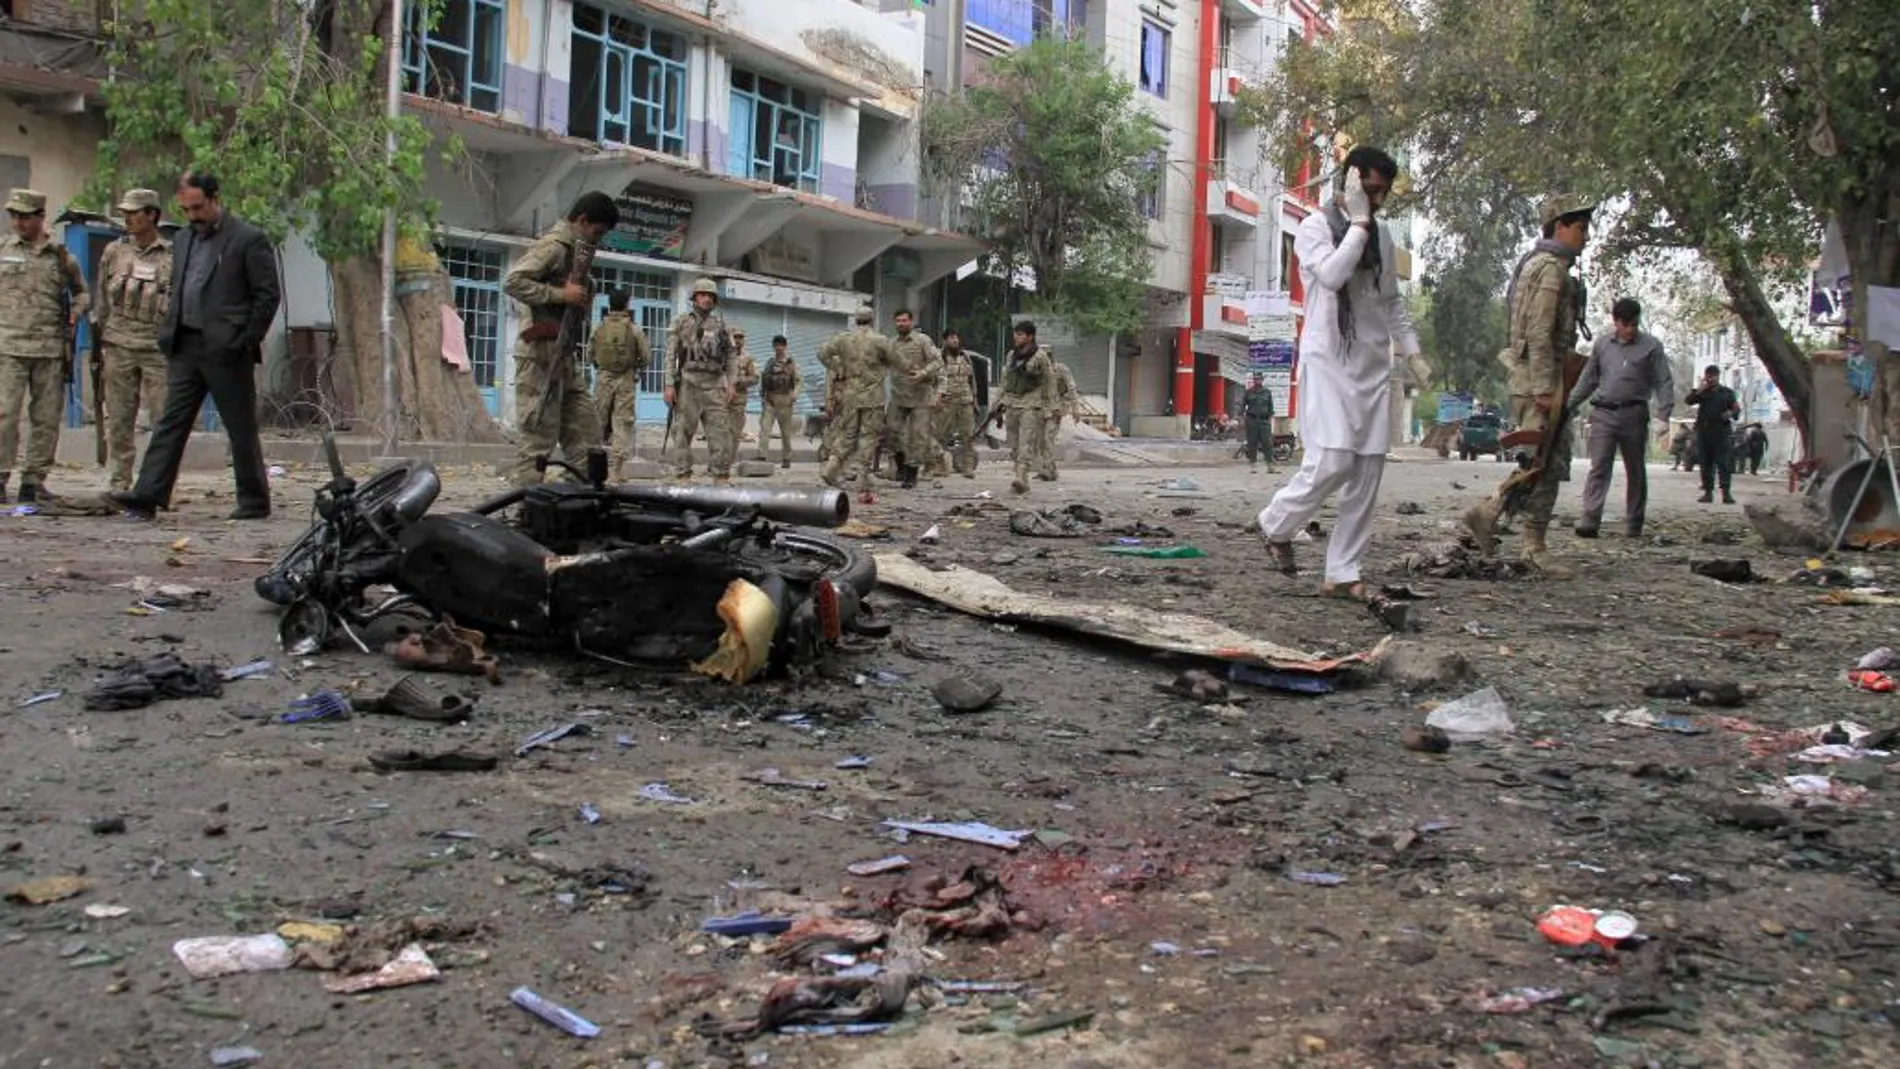 Al menos 34 personas han muerto y un centenar resultaron heridas en un atentado suicida perpetrado al este de Afganistán